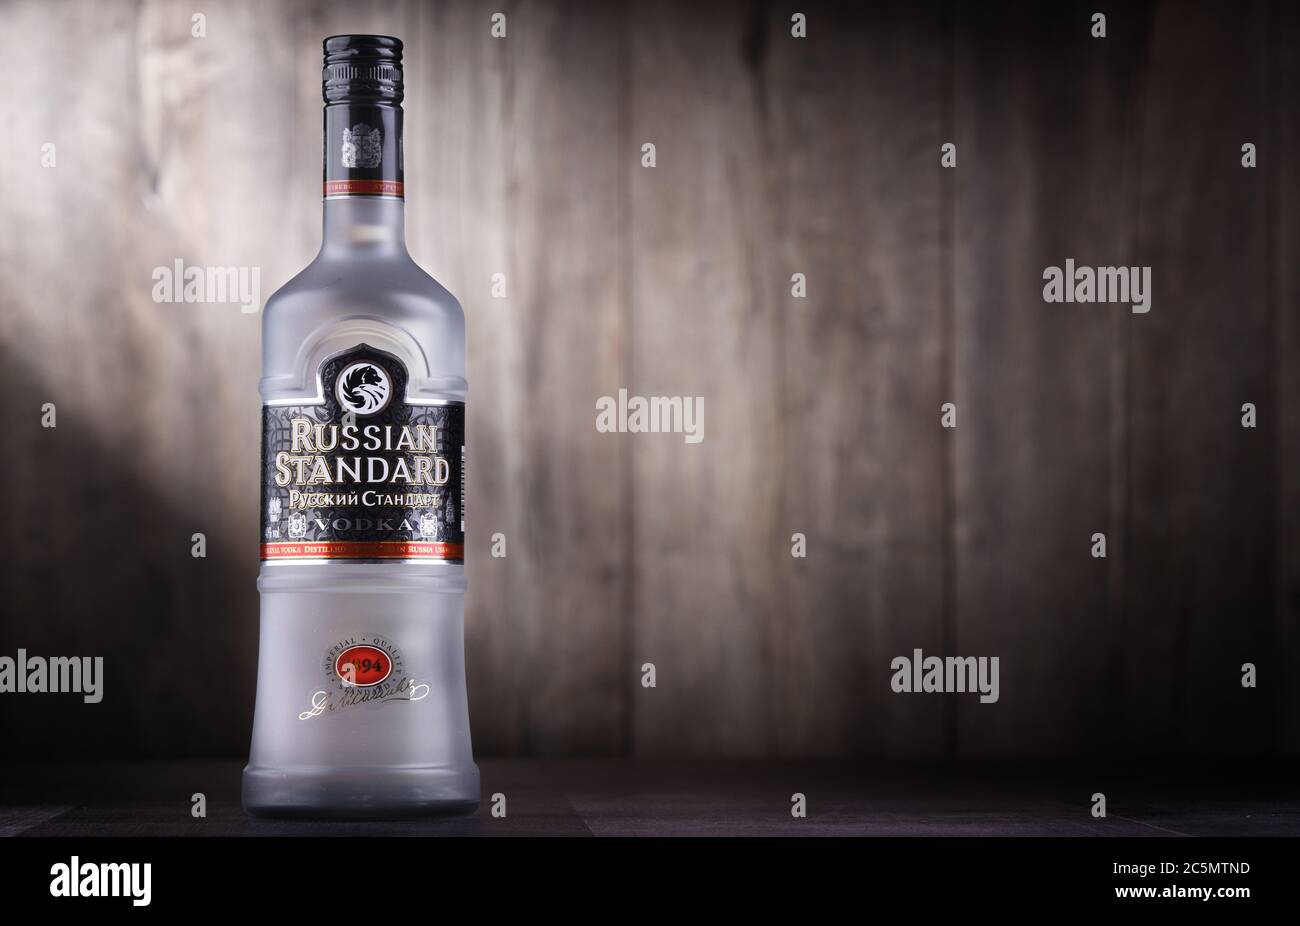 POSEN, POL - 26. JUN 2020: Flasche Russian Standard Vodka, die Welt-Nr. 1 russischer Premium-Wodka Stockfoto